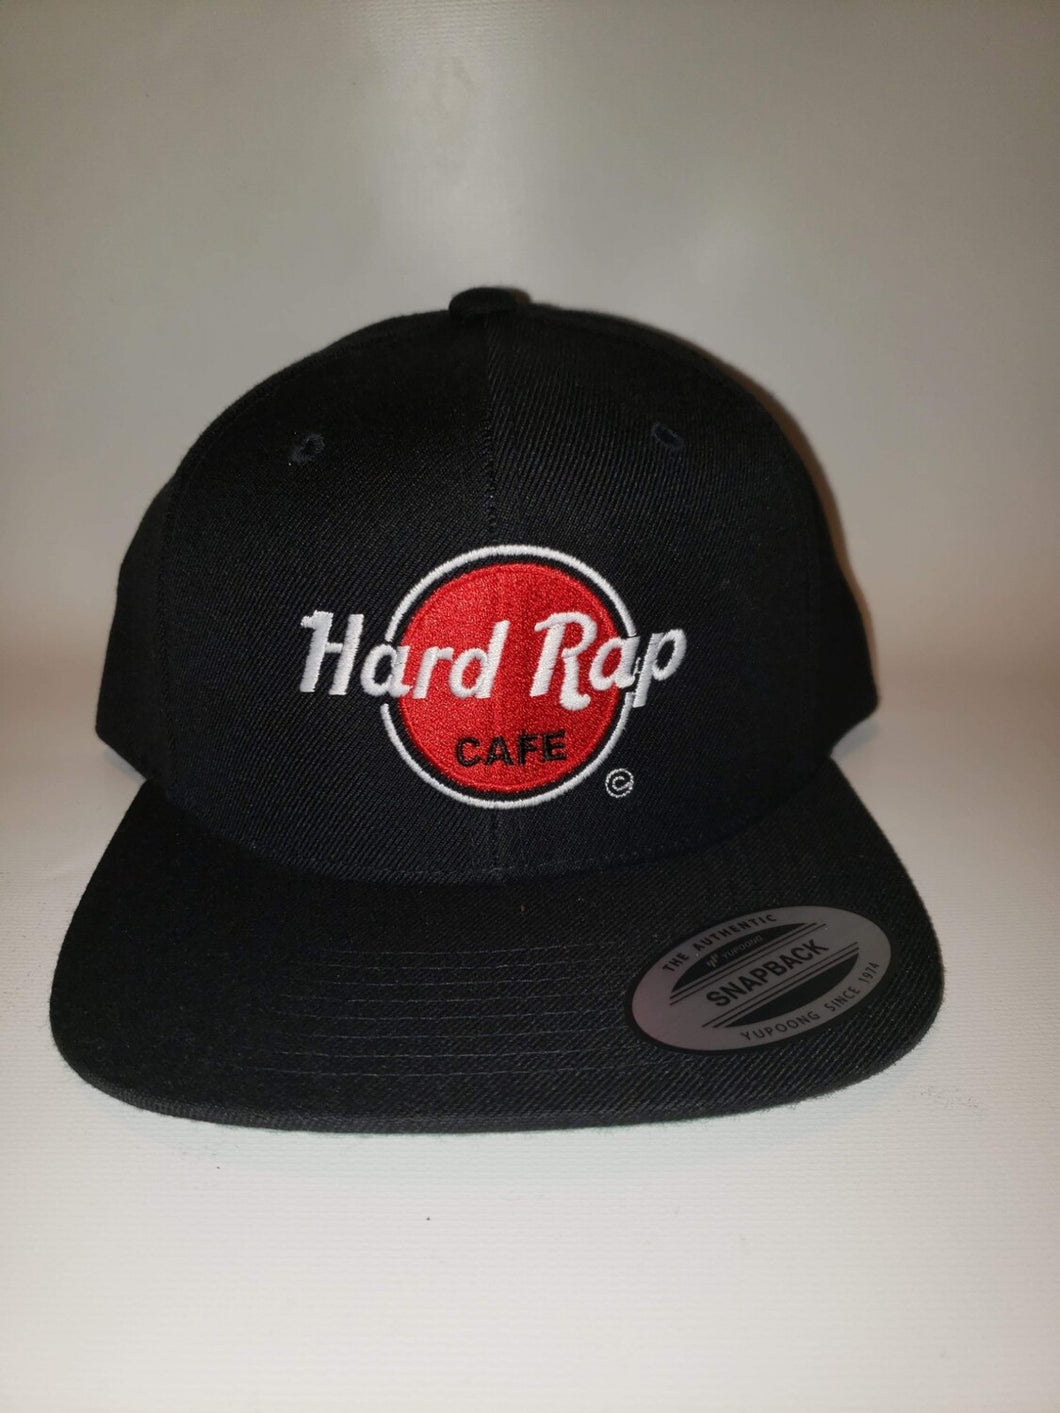 Hard Rap Cafe Snapback